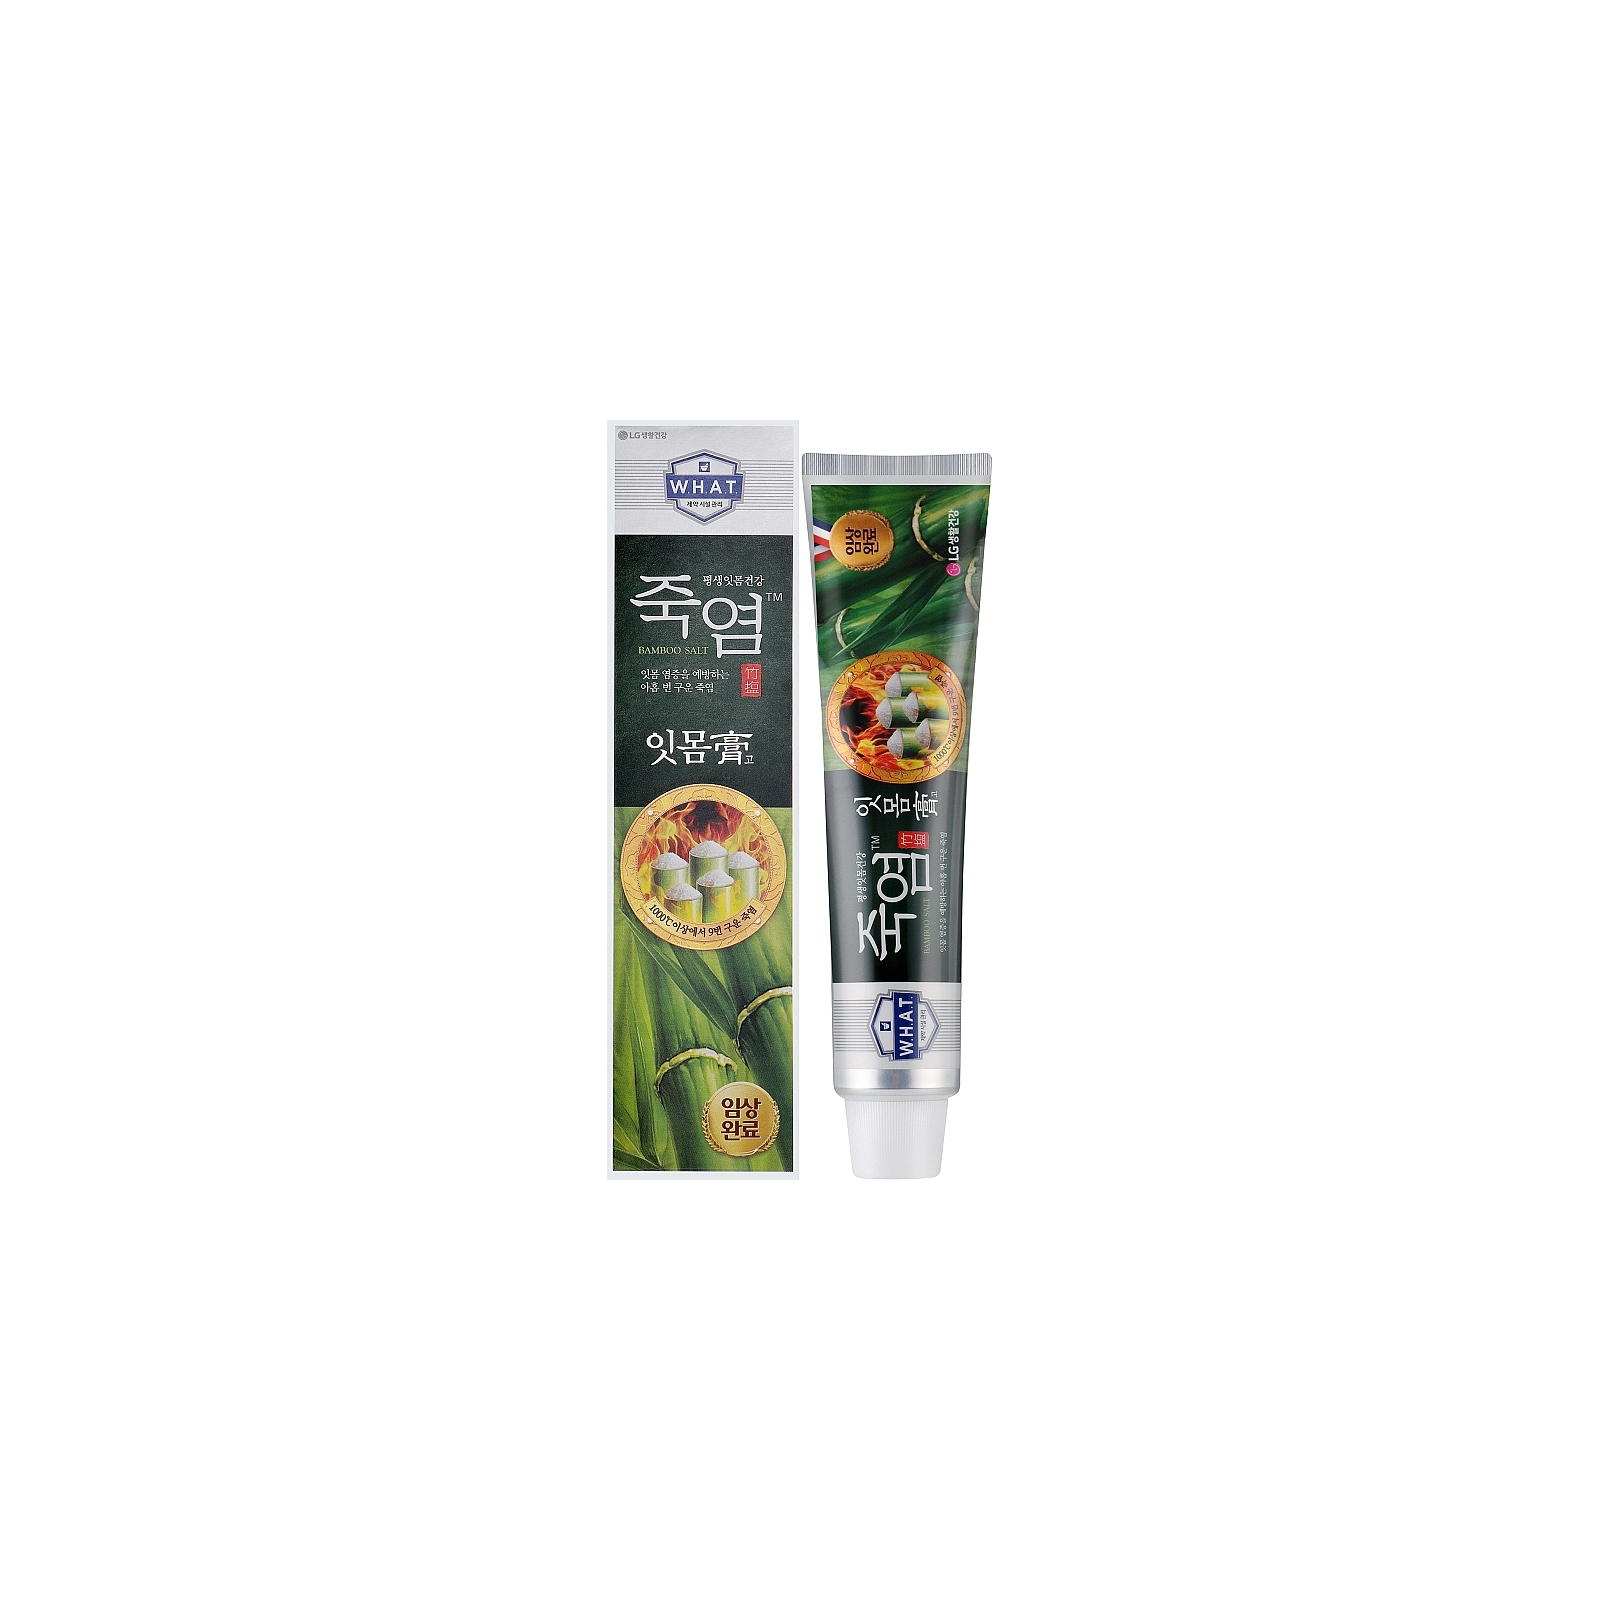 Зубная паста LG Bamboo Salt Toothpaste Gum Care 120 г (8801051060157) изображение 2